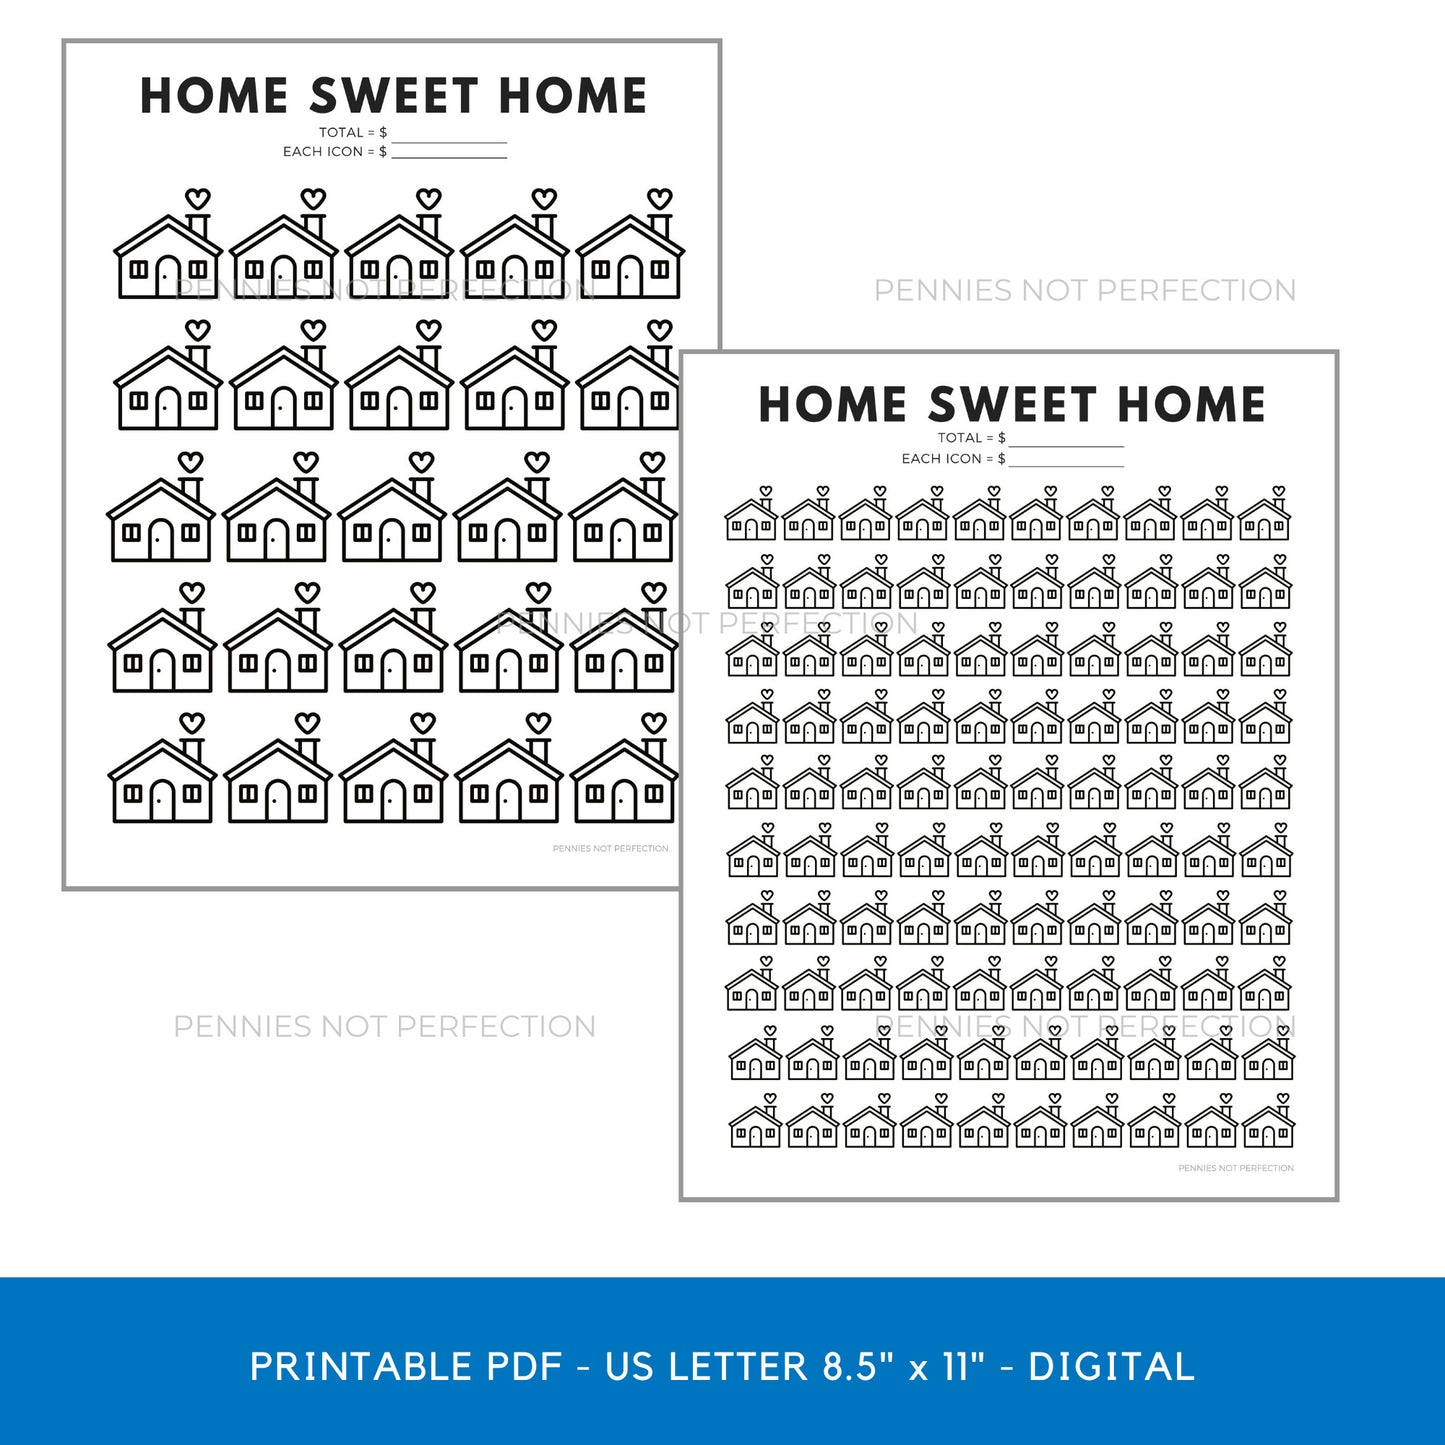 Home Sweet Home Savings Goal Tracker | Home Savings Tracker Printable